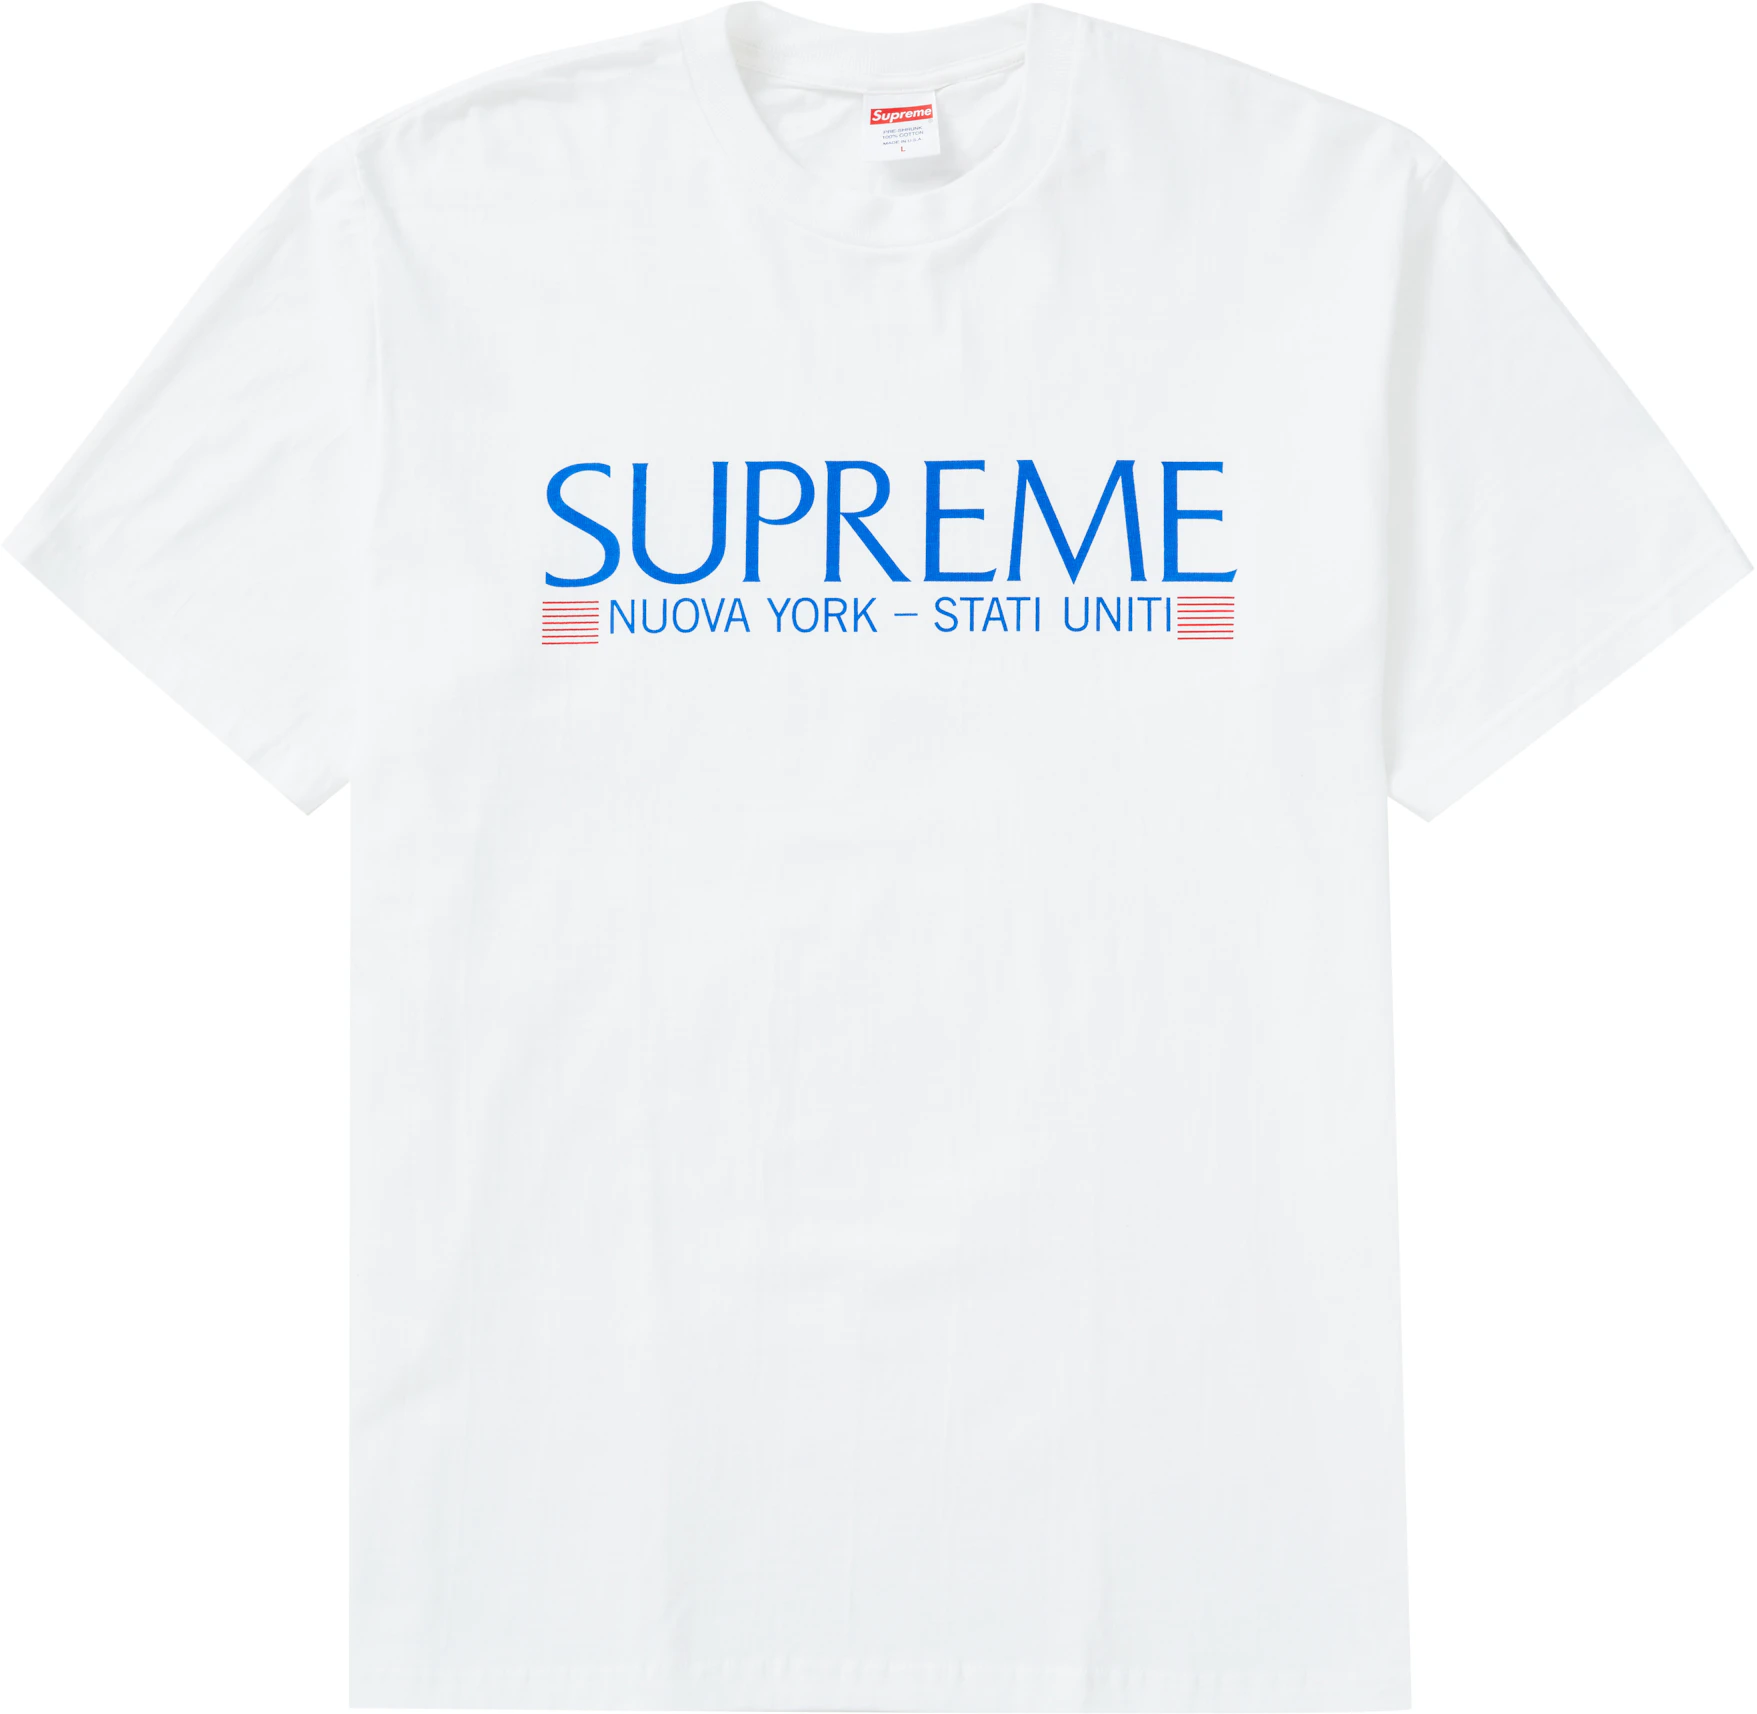 Supreme New York T Shirt | lupon.gov.ph